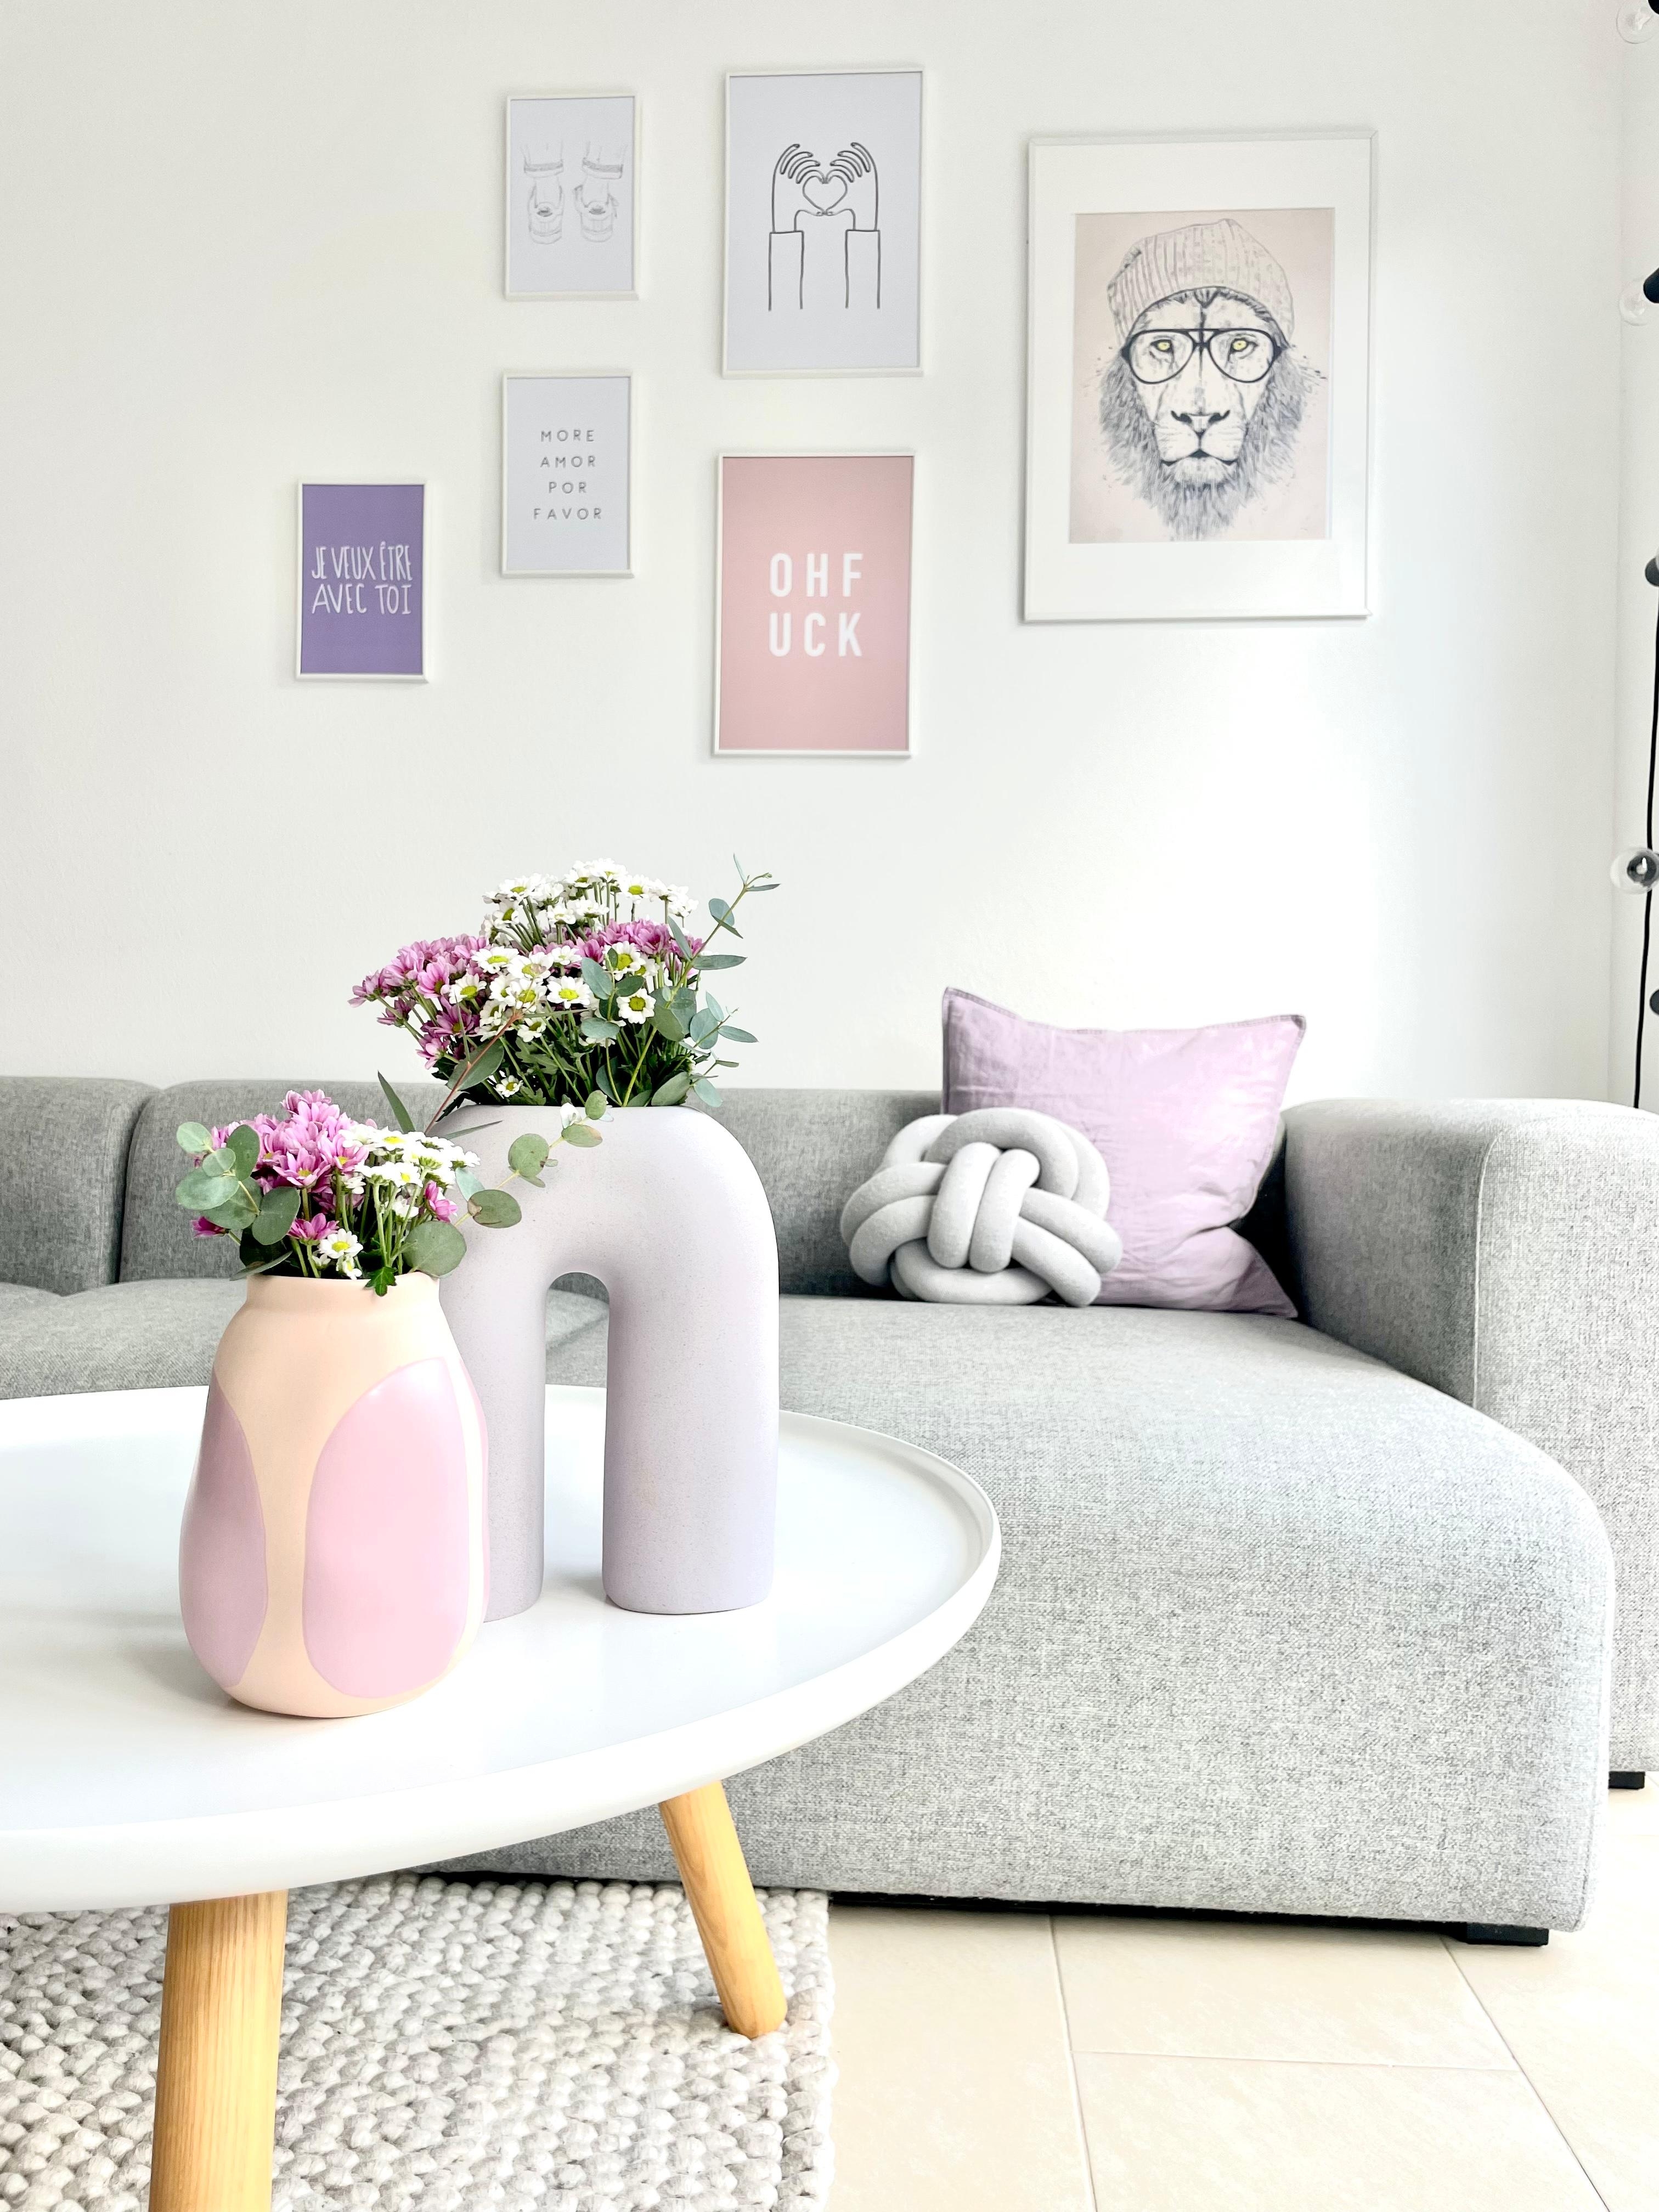 #wohnzimmer #livingroom #bilderwand #deko#blumen#vasen #bilder #wohnideen#frühlingsblumen #farben#pastel #wohnen #living